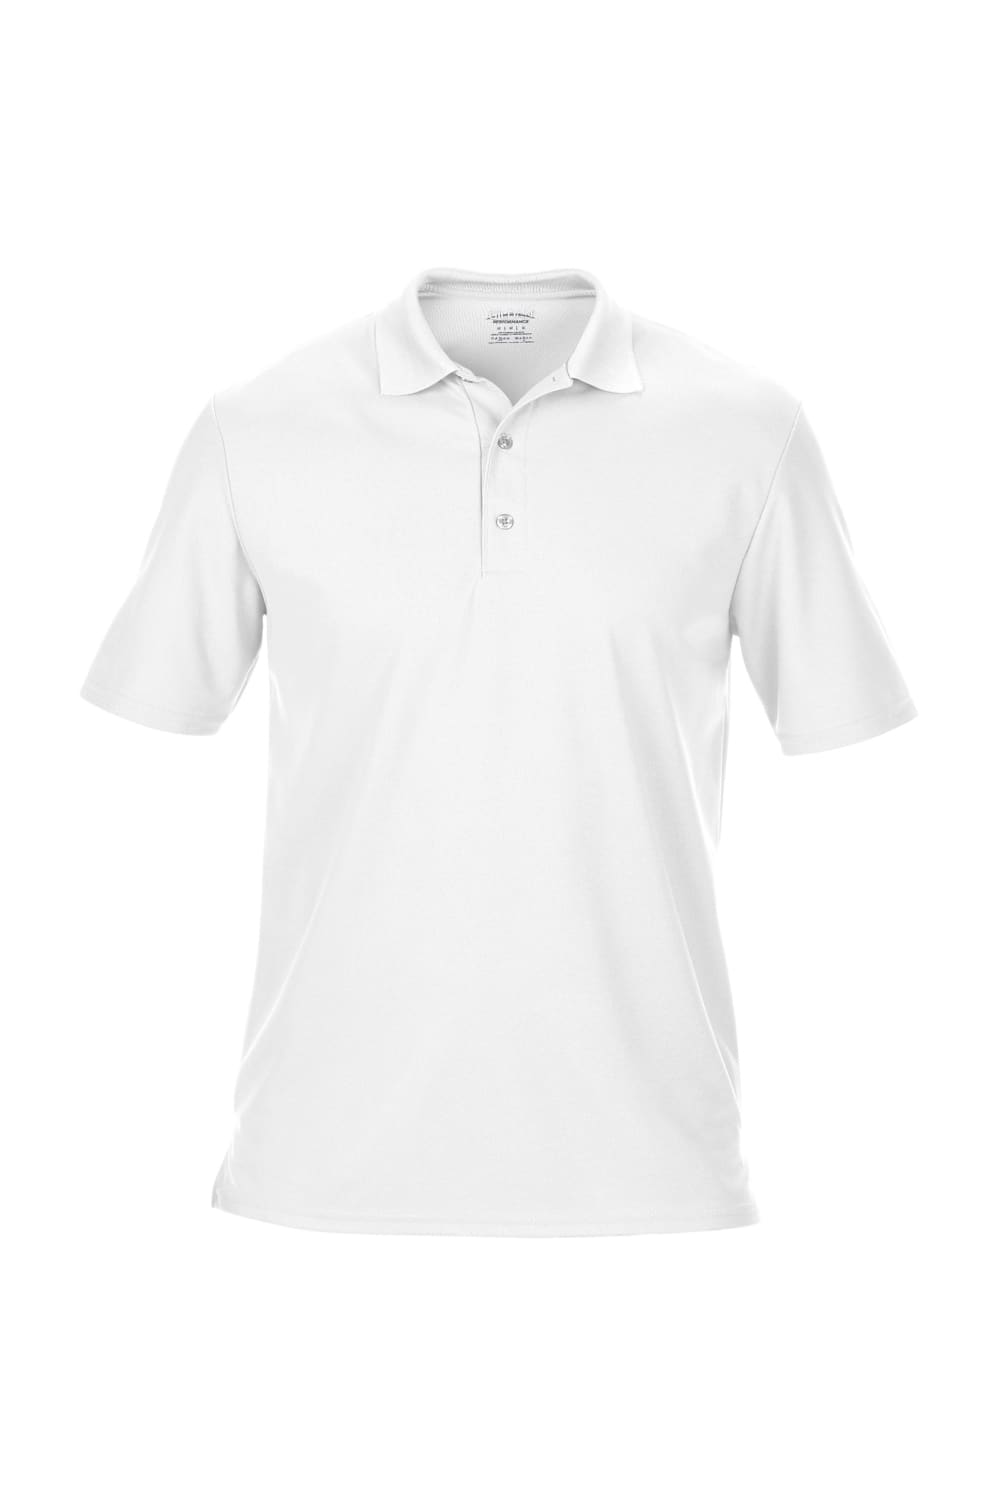 Gildan Mens Double Pique Short Sleeve Sports Polo Shirt (White)